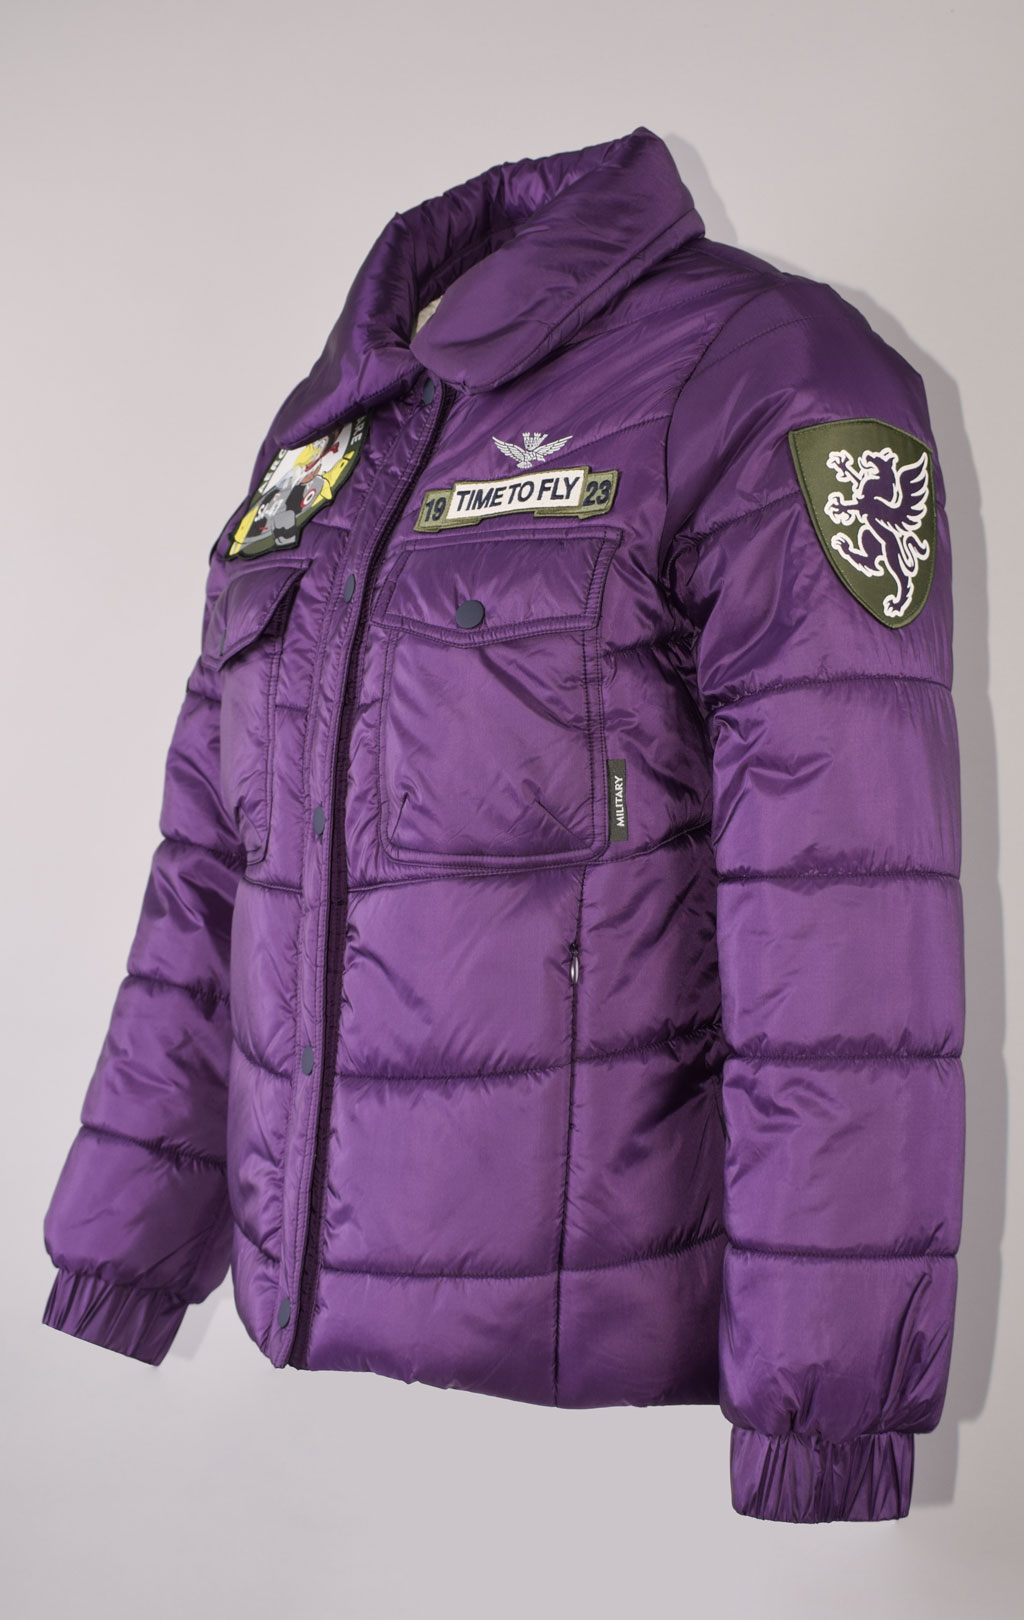 Женская куртка AERONAUTICA MILITARE FW 23/24 m/CN viola (AB 2119) 